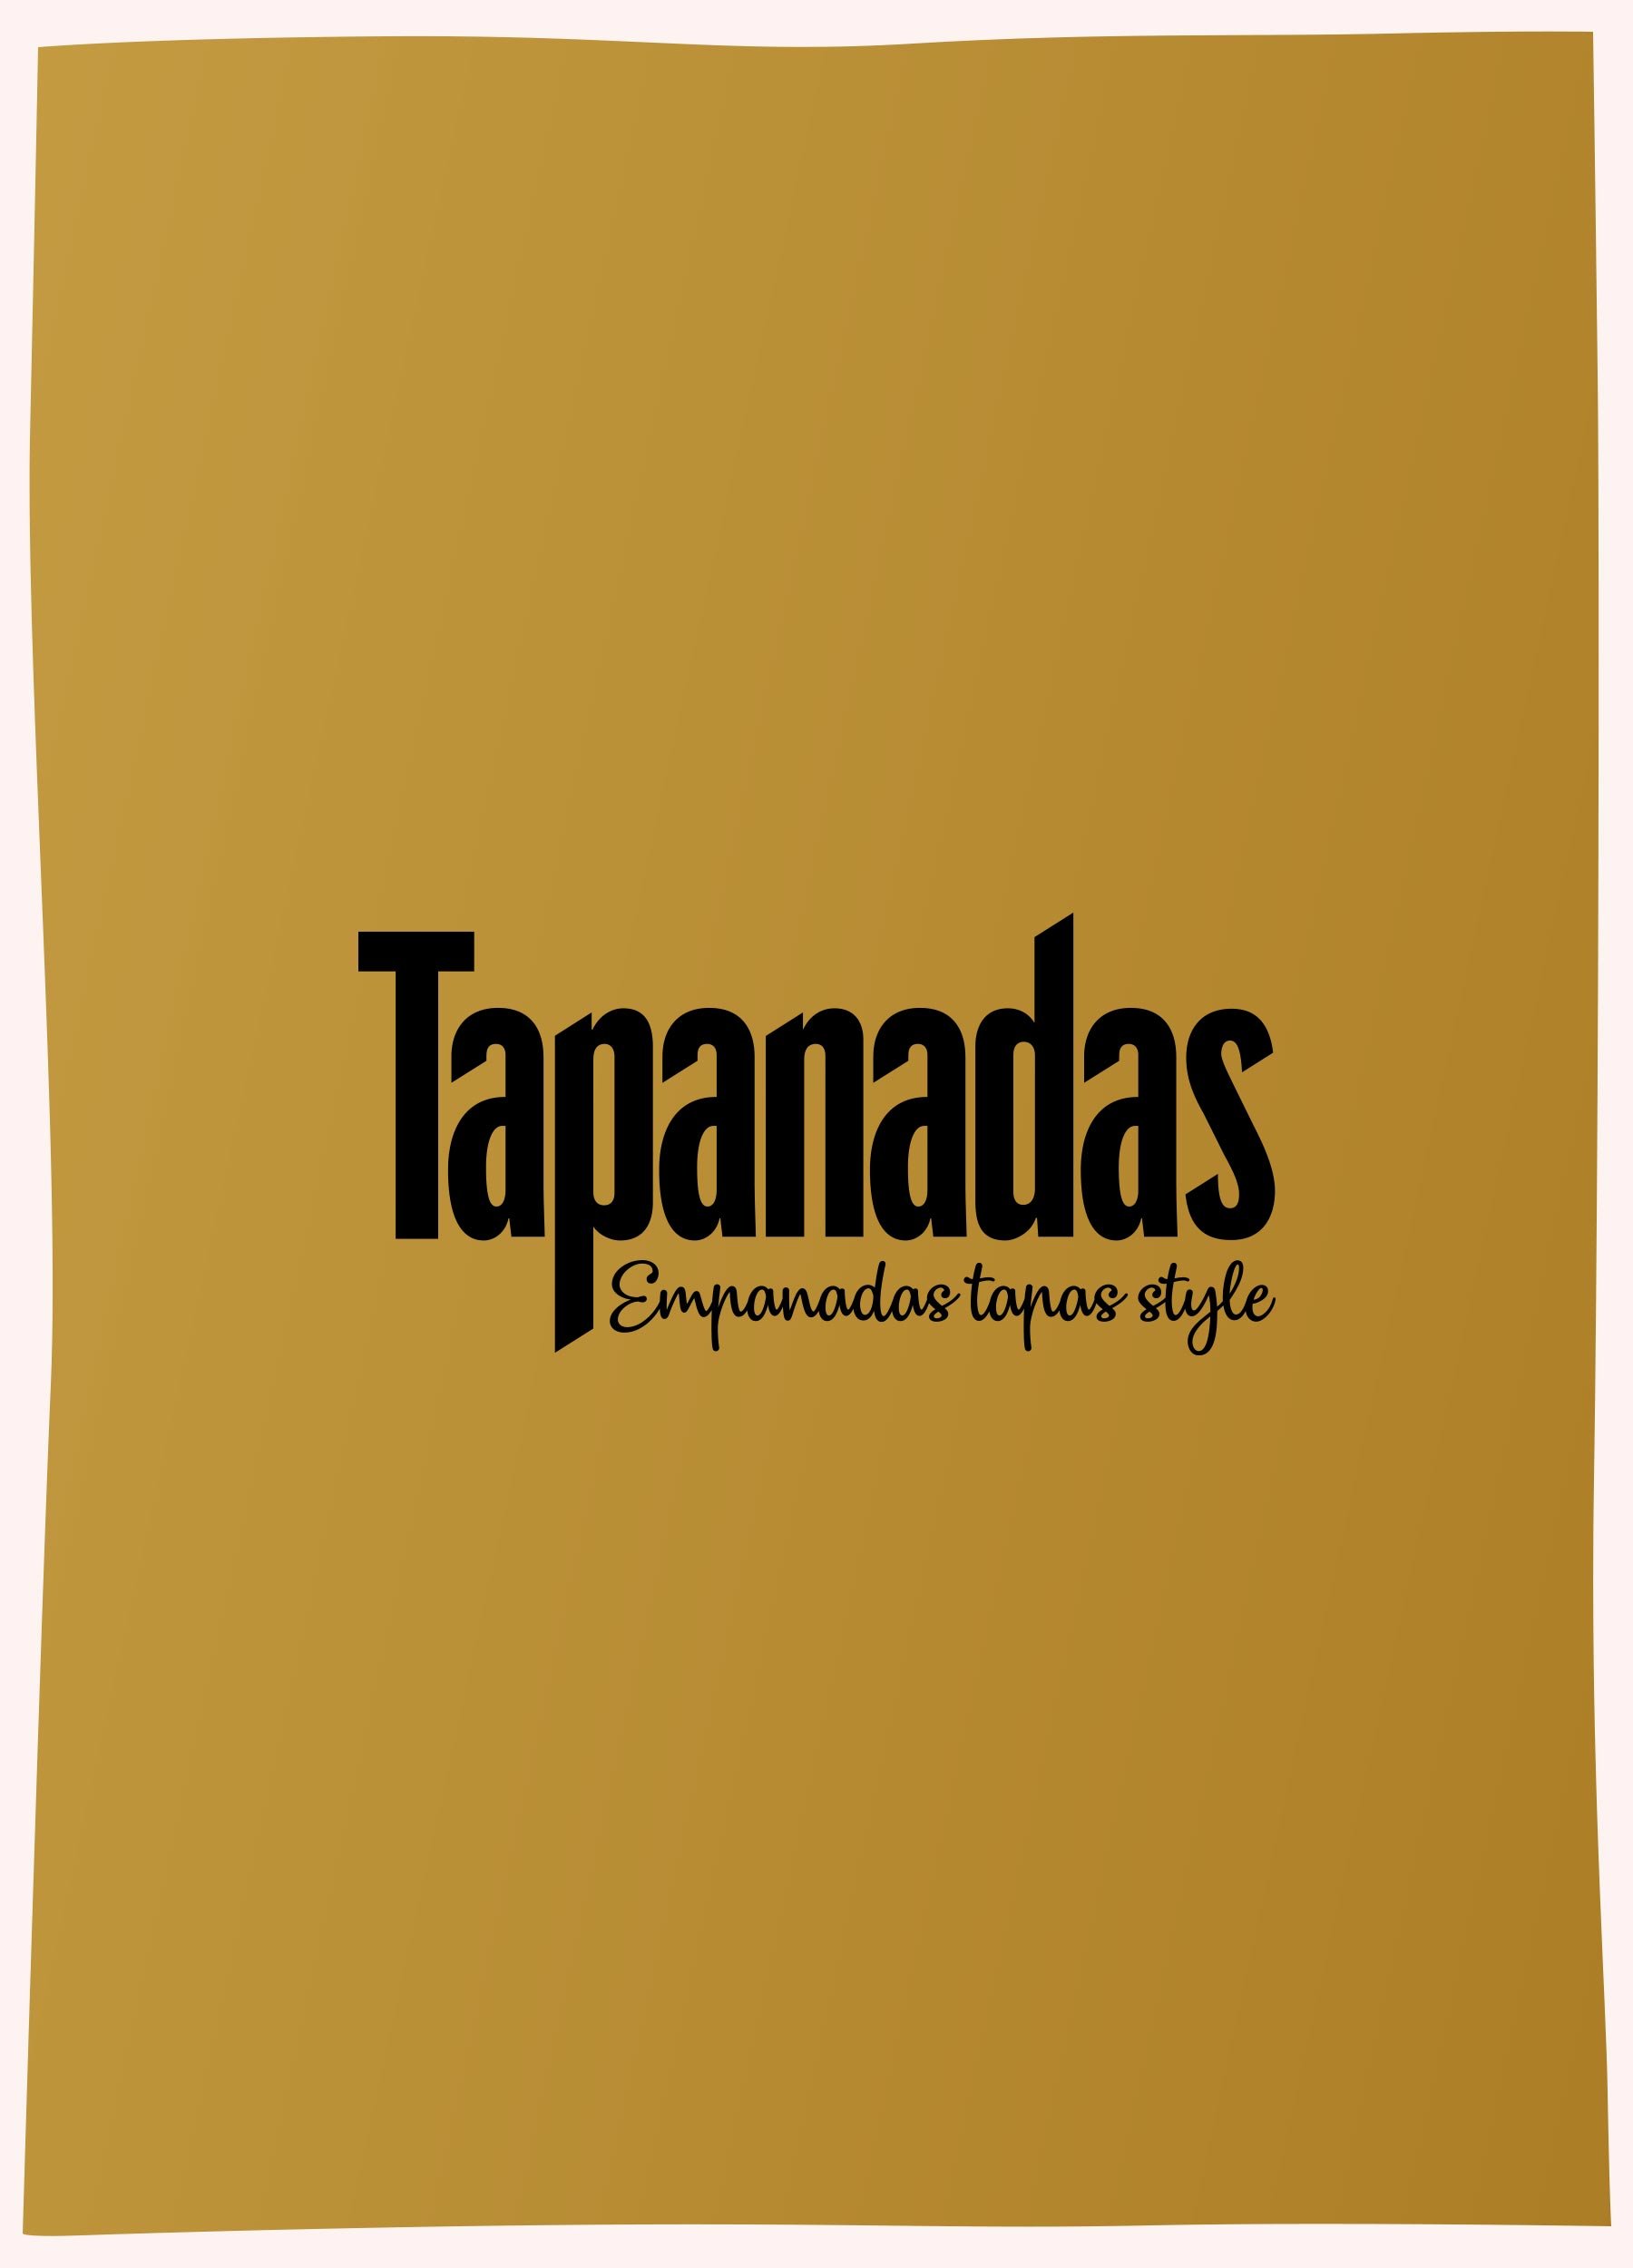 logo_tapanadas_angie_valdez.jpg